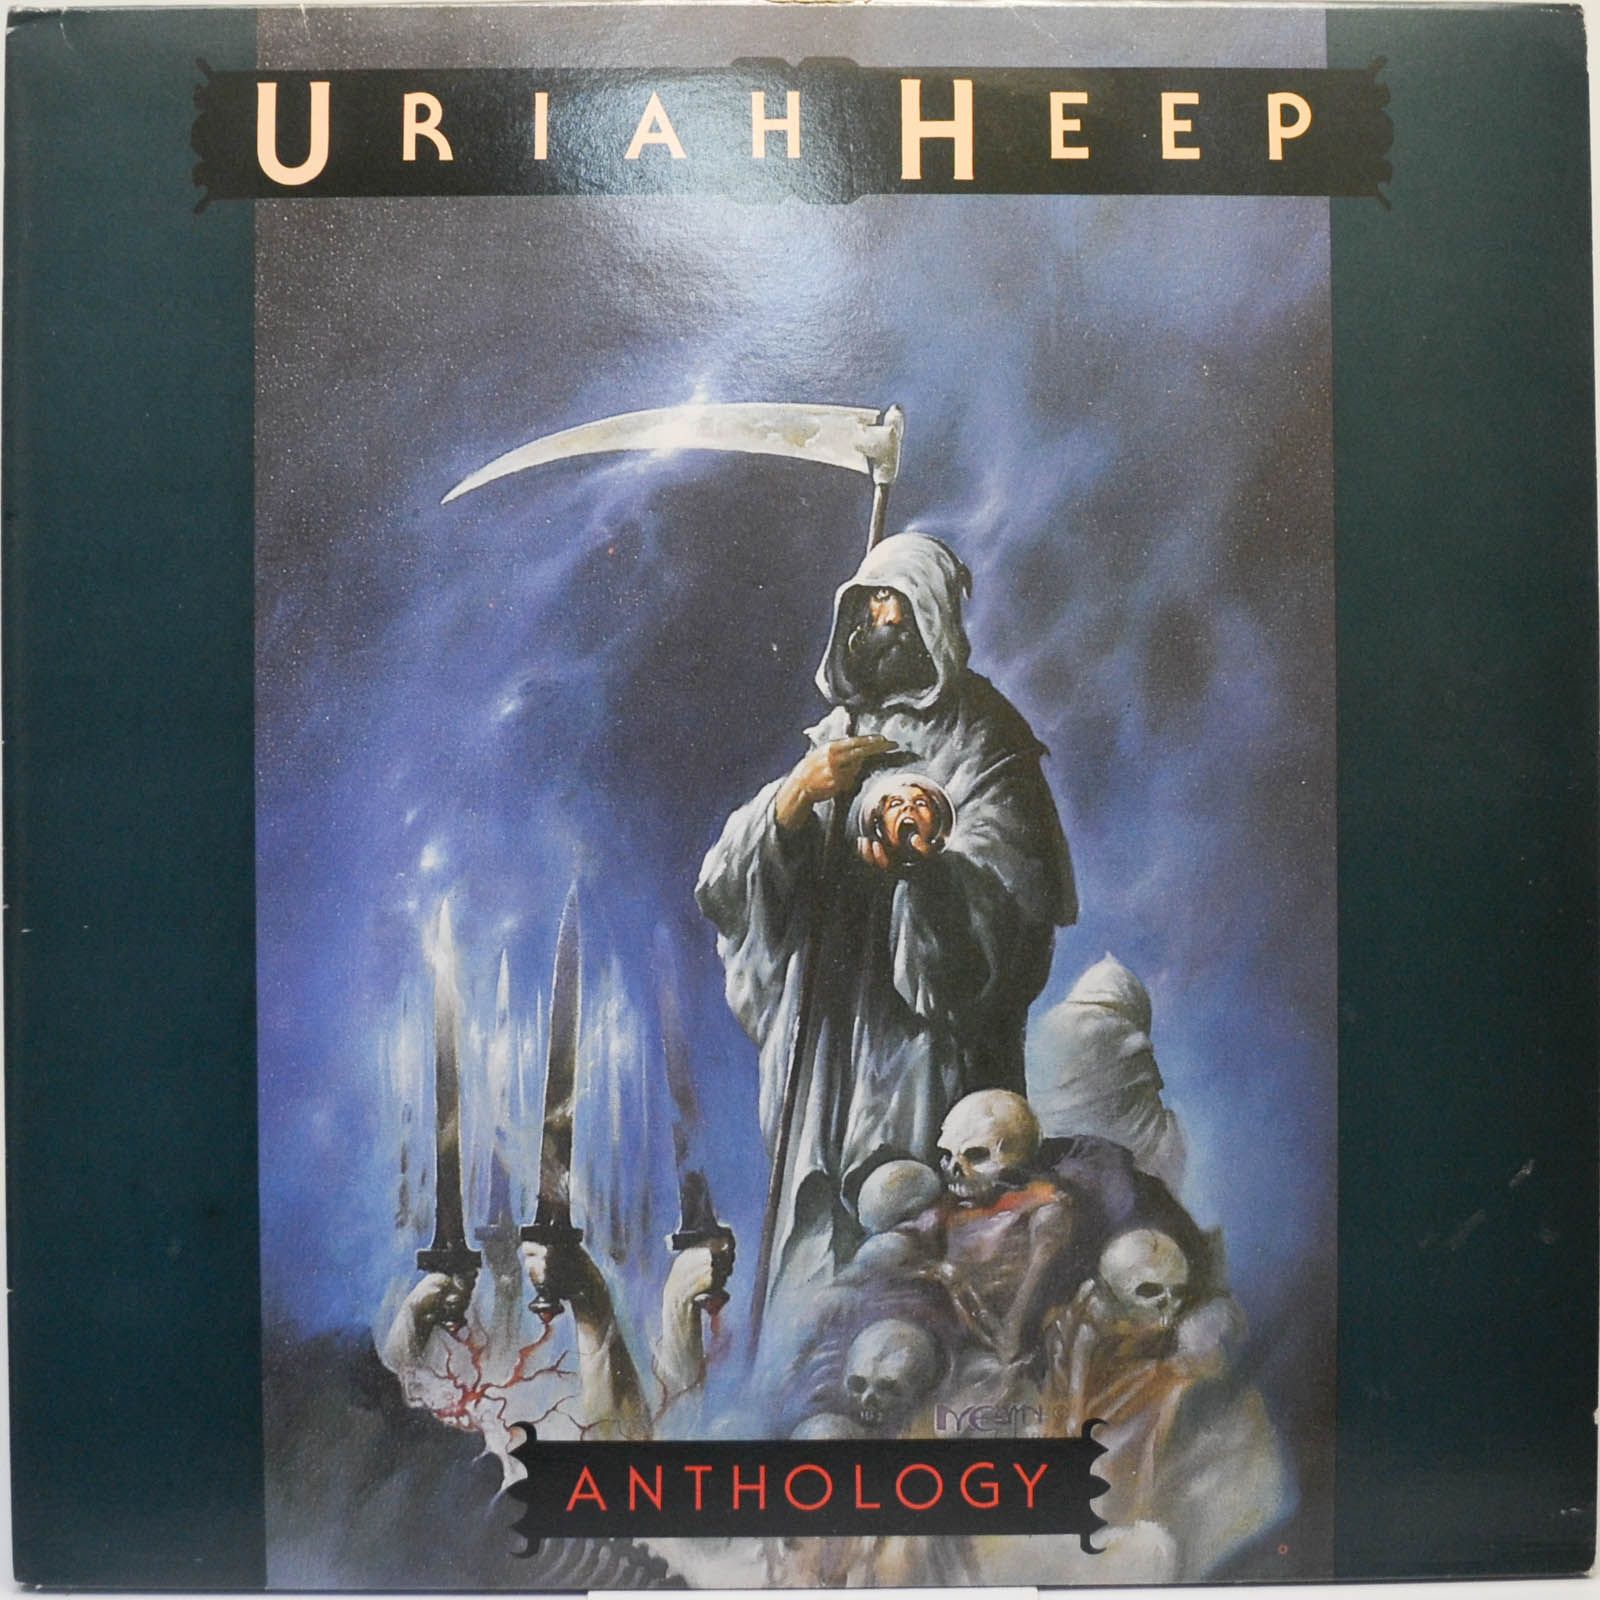 Uriah Heep — Anthology (2LP), 1985